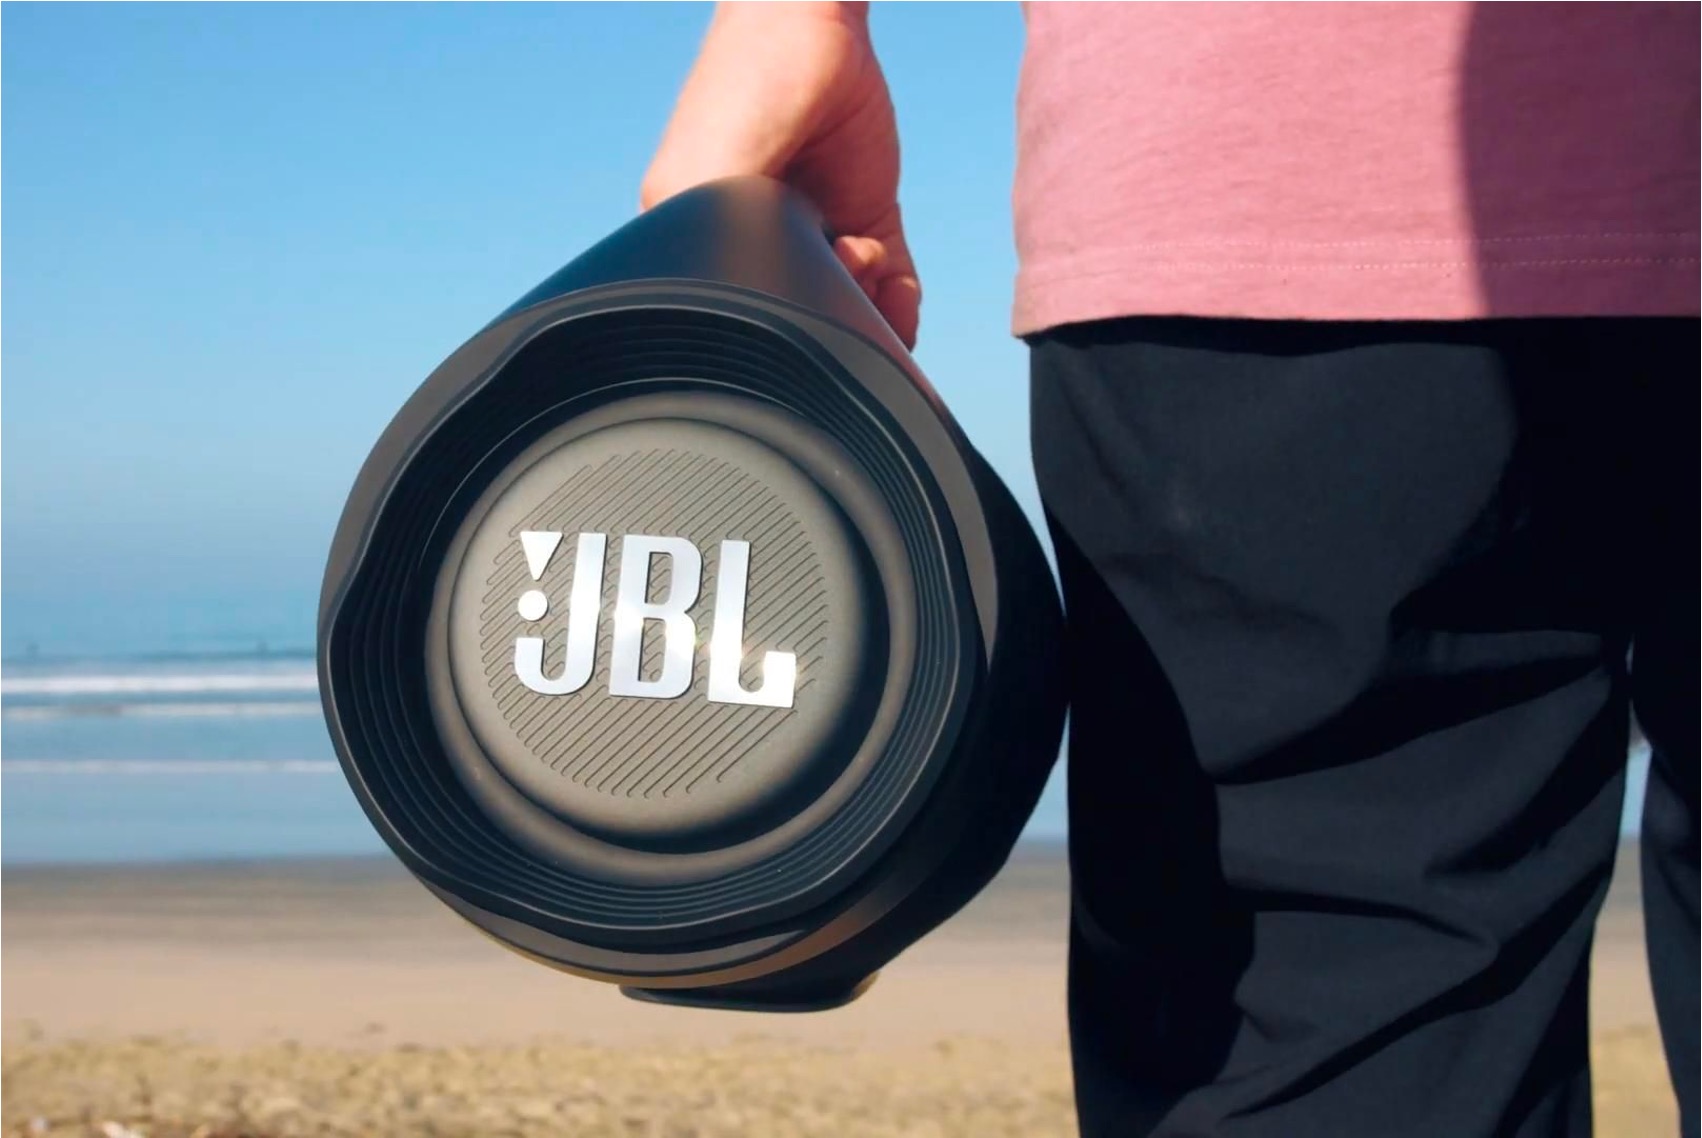 Jbl звучание. JBL inside. JBL 18 дюймов динамик. JBL Soundgear для бега. Вайб JBL обои.